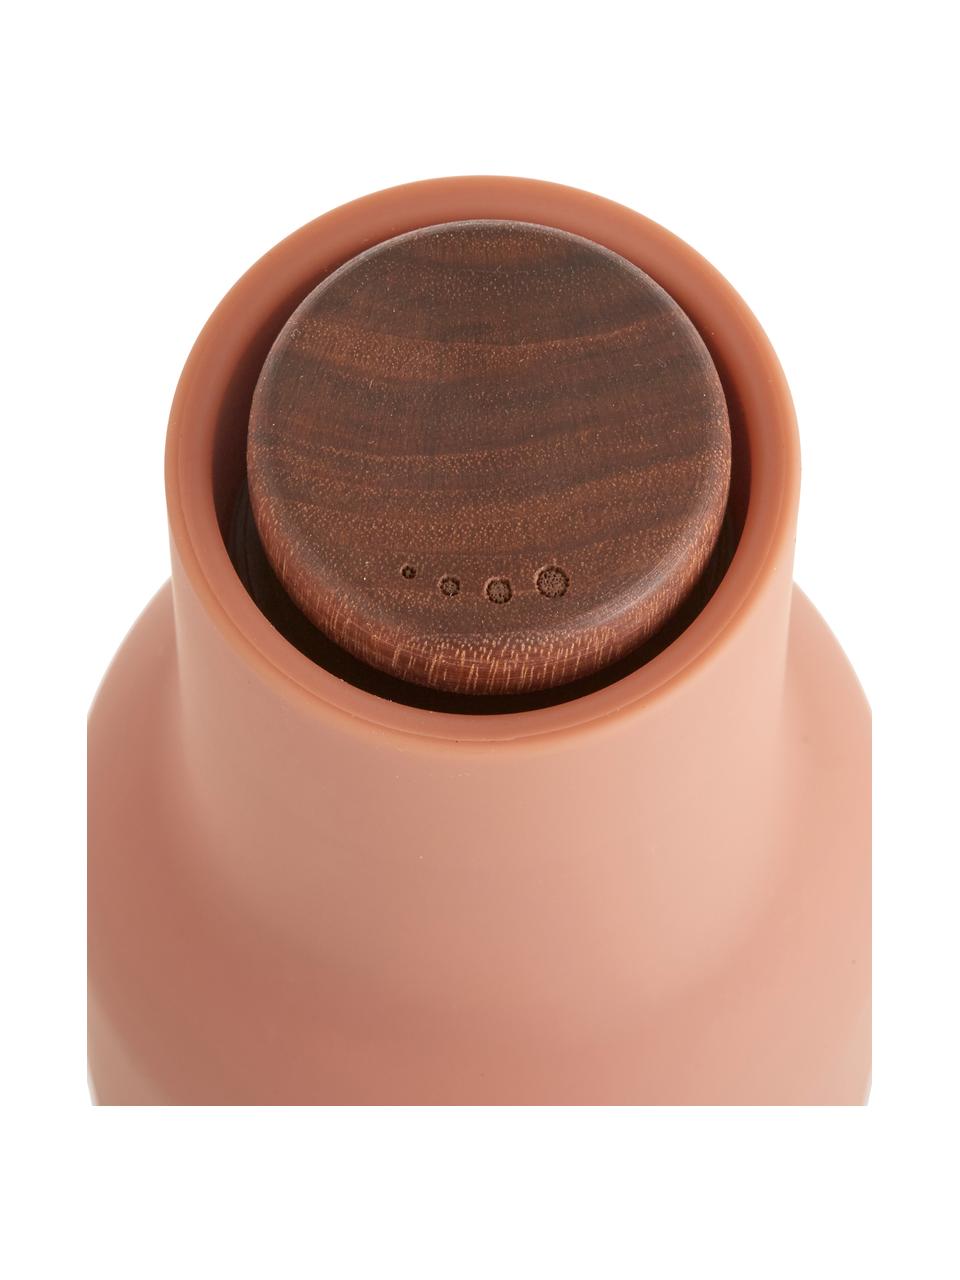 Set macina sale e pepe con coperchio in legno di noce Bottle Grinder 2 pz, Coperchio: legno di noce, Tonalità rosa, legno di noce, Ø 8 x Alt. 21 cm